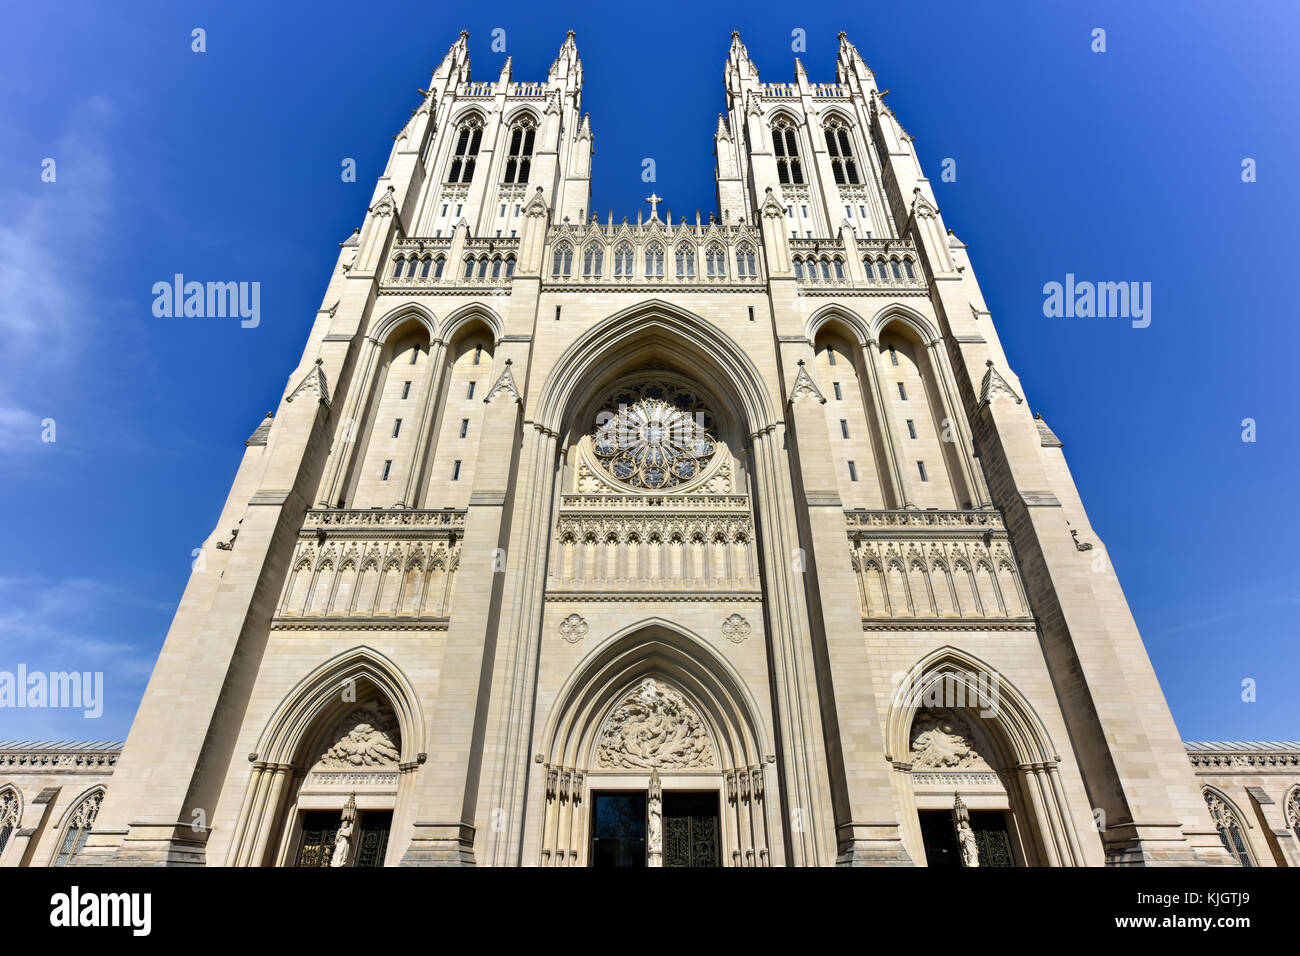 L'église cathédrale de saint Pierre et saint Paul dans la ville et diocèse de Washington. Washington National Cathedral, est une cathédrale de l'episcop Banque D'Images